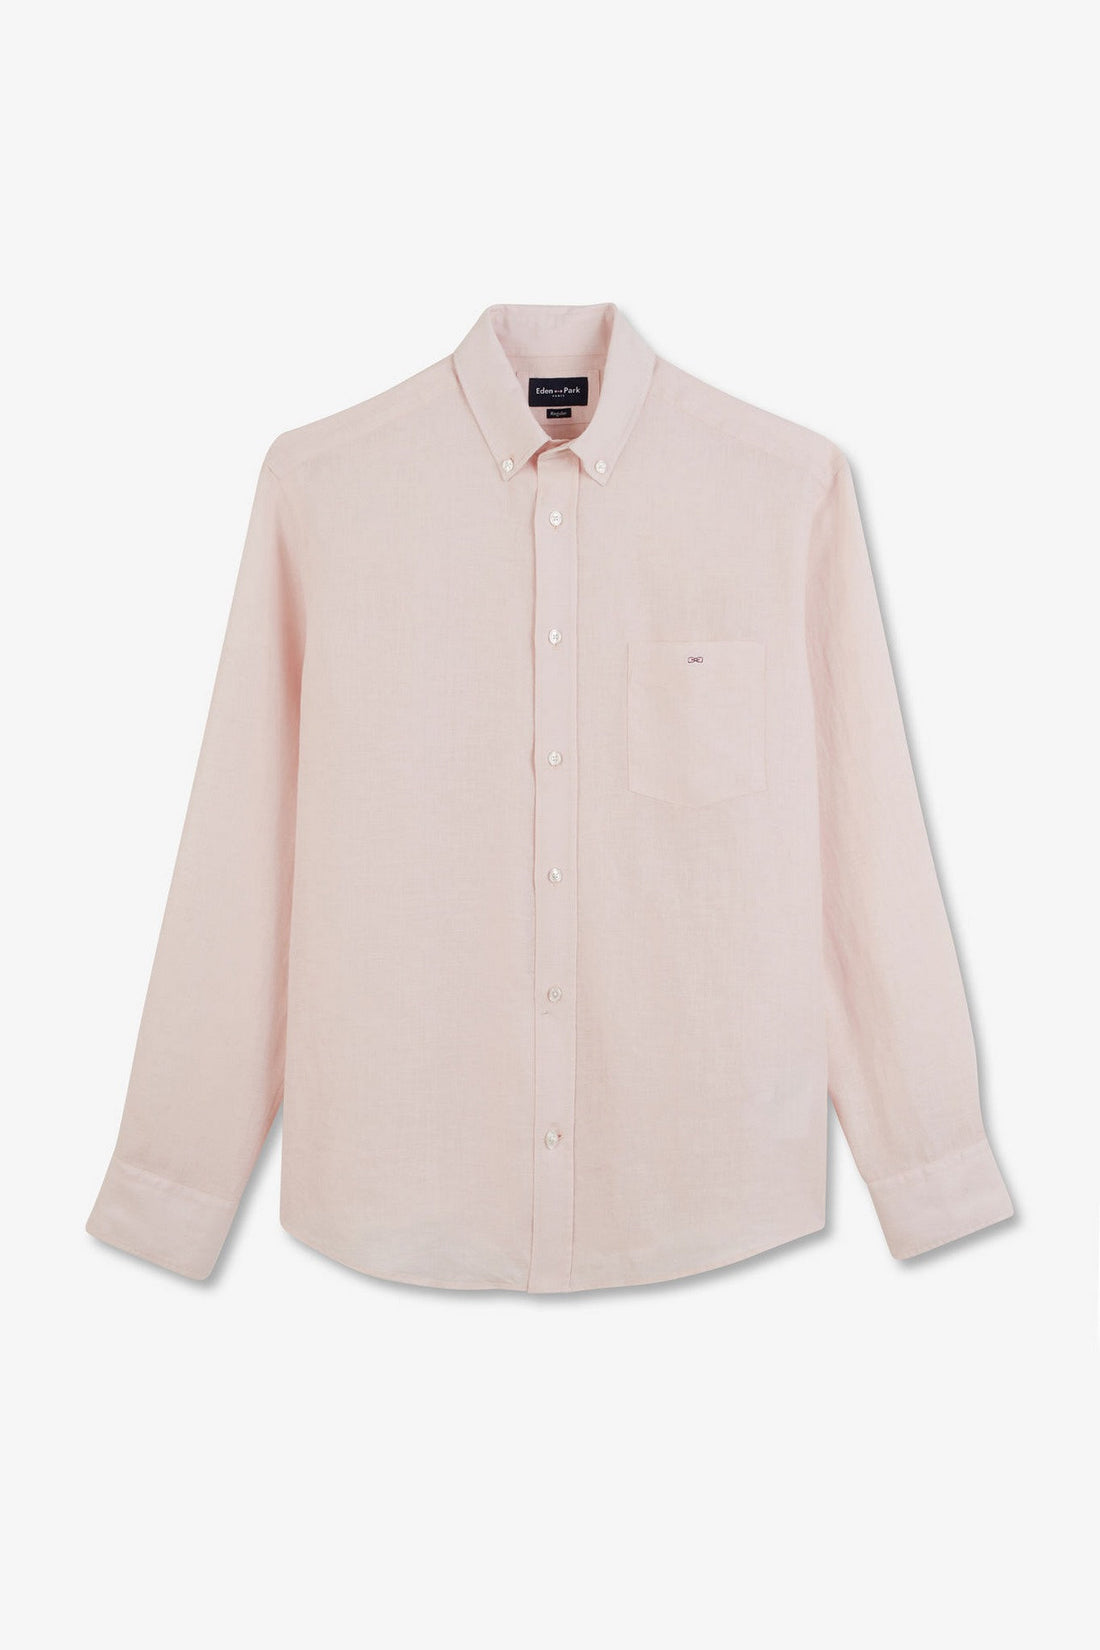 Plain Pink Linen Shirt_E24CHECL0005_ROC10_02